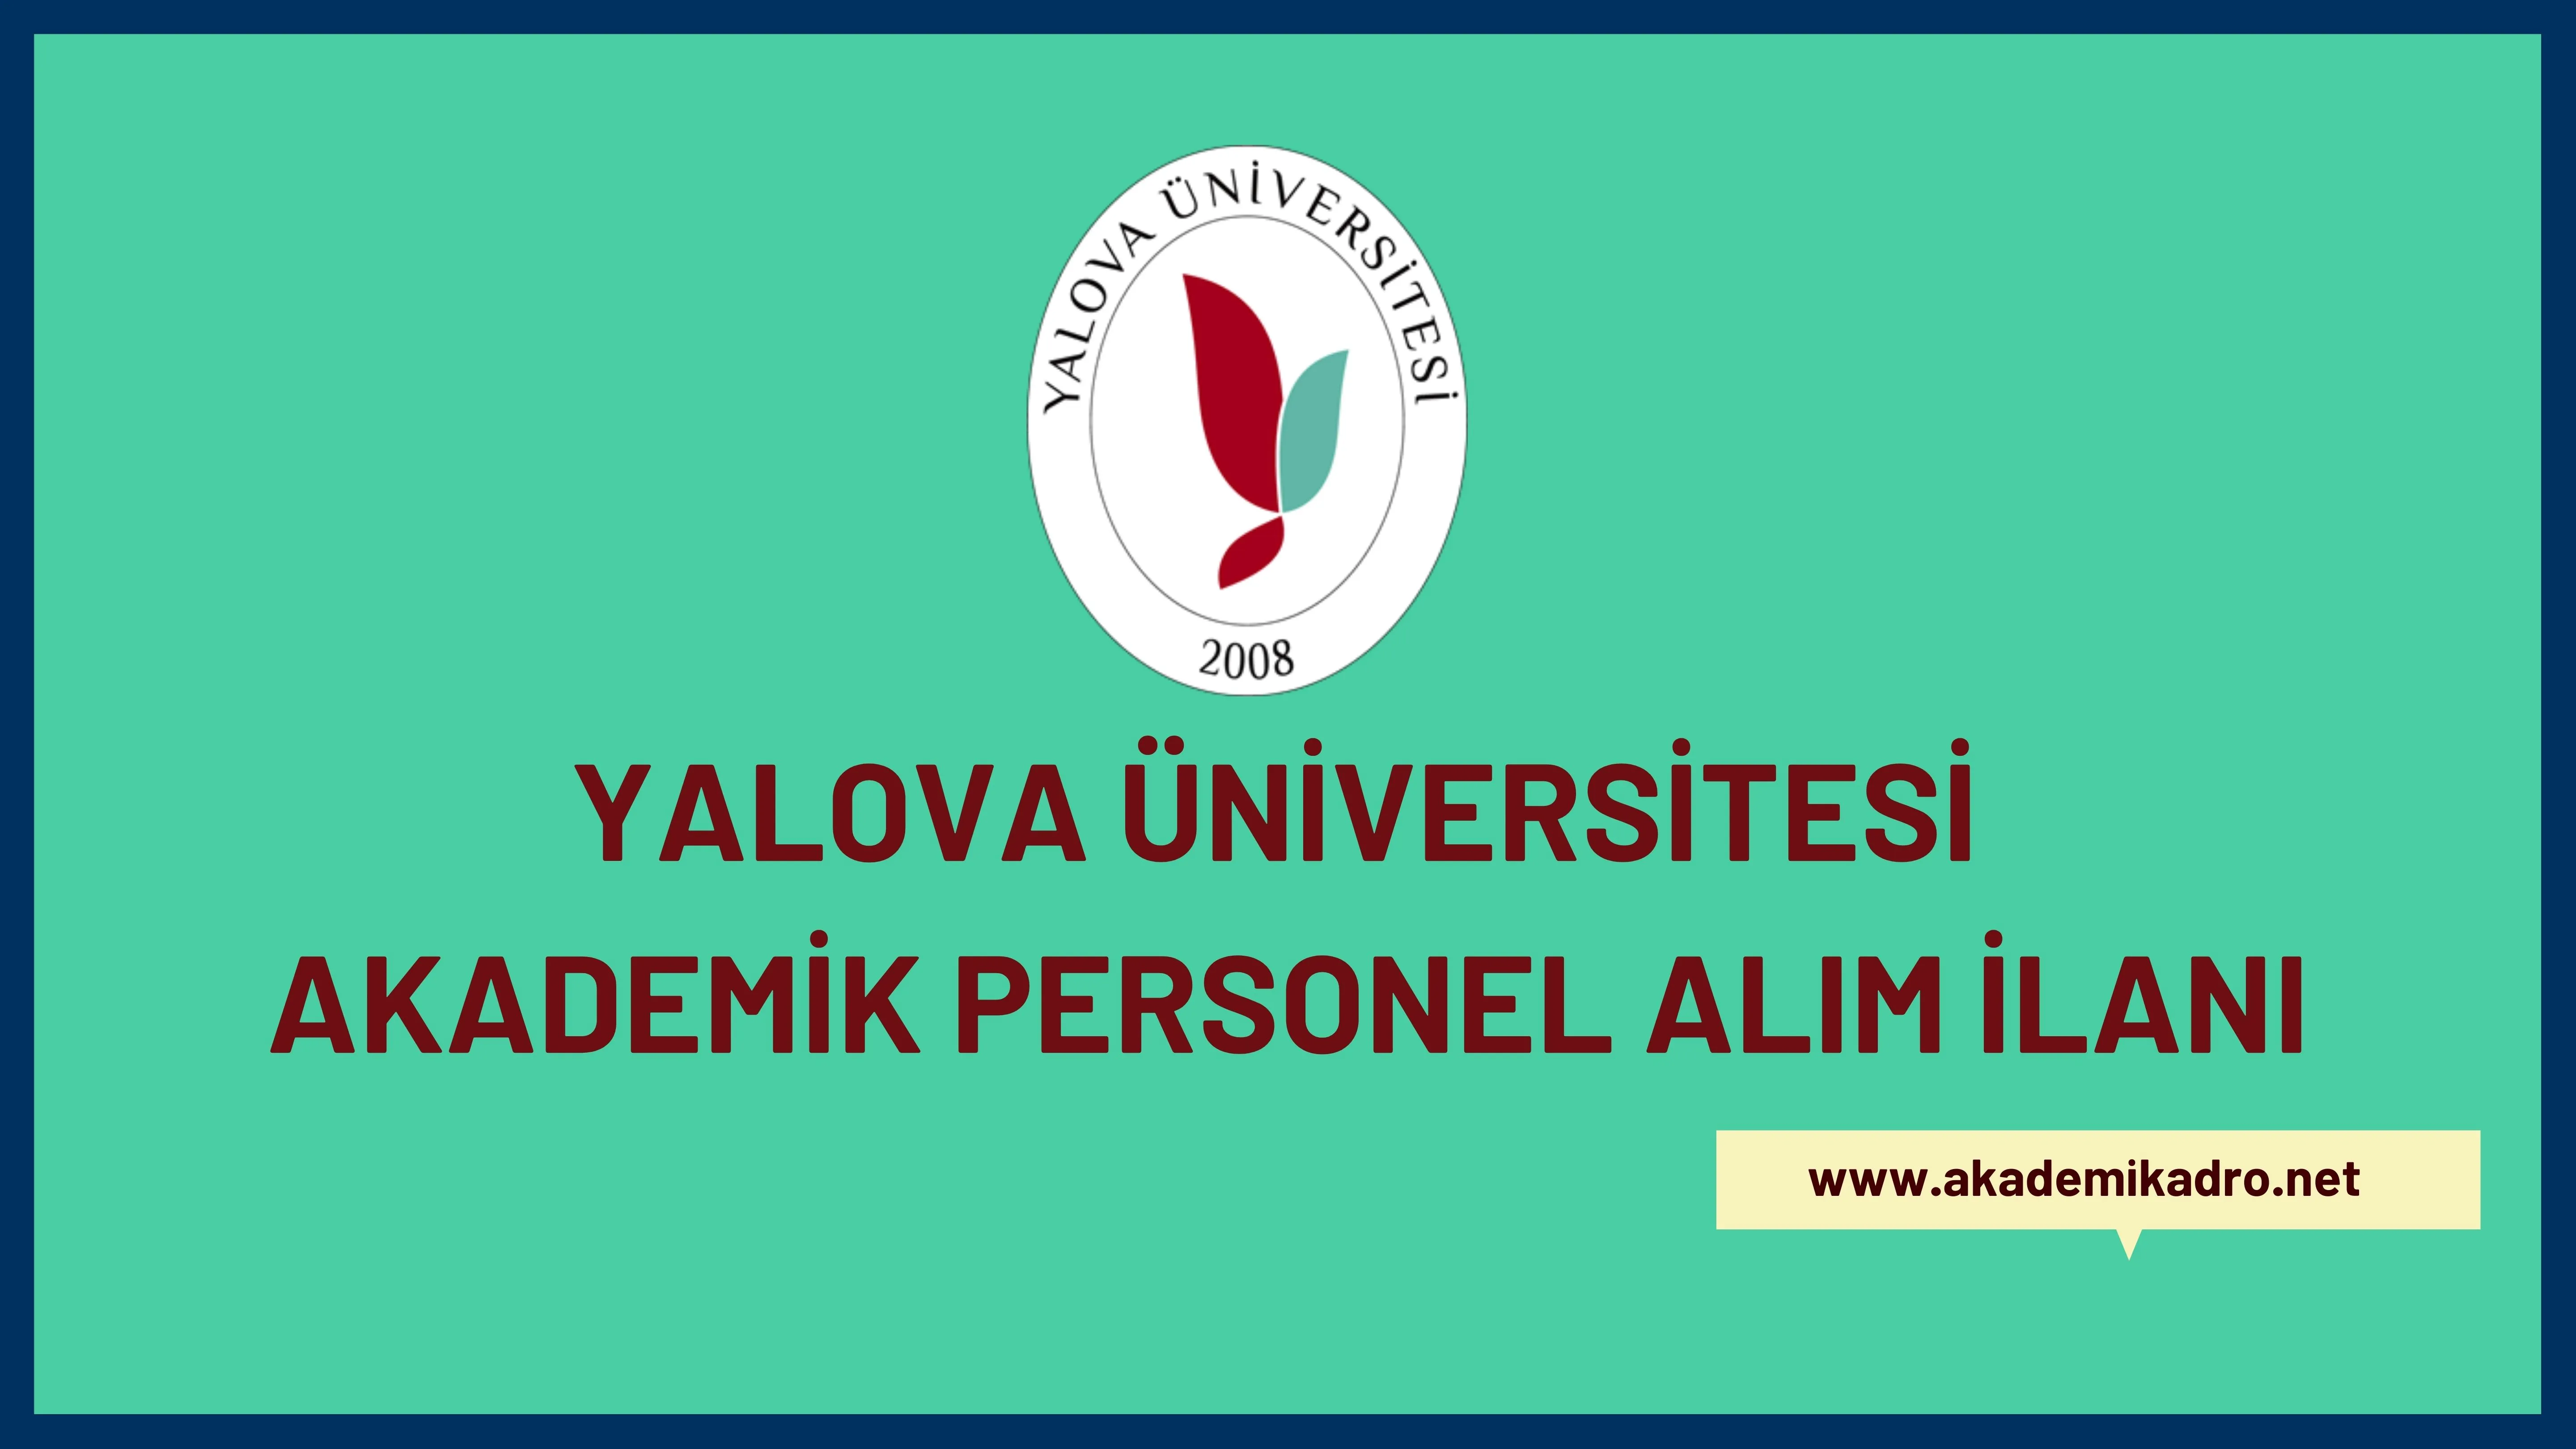 Yalova Üniversitesi çeşitli branşlarda 8 akademik personel alacak.